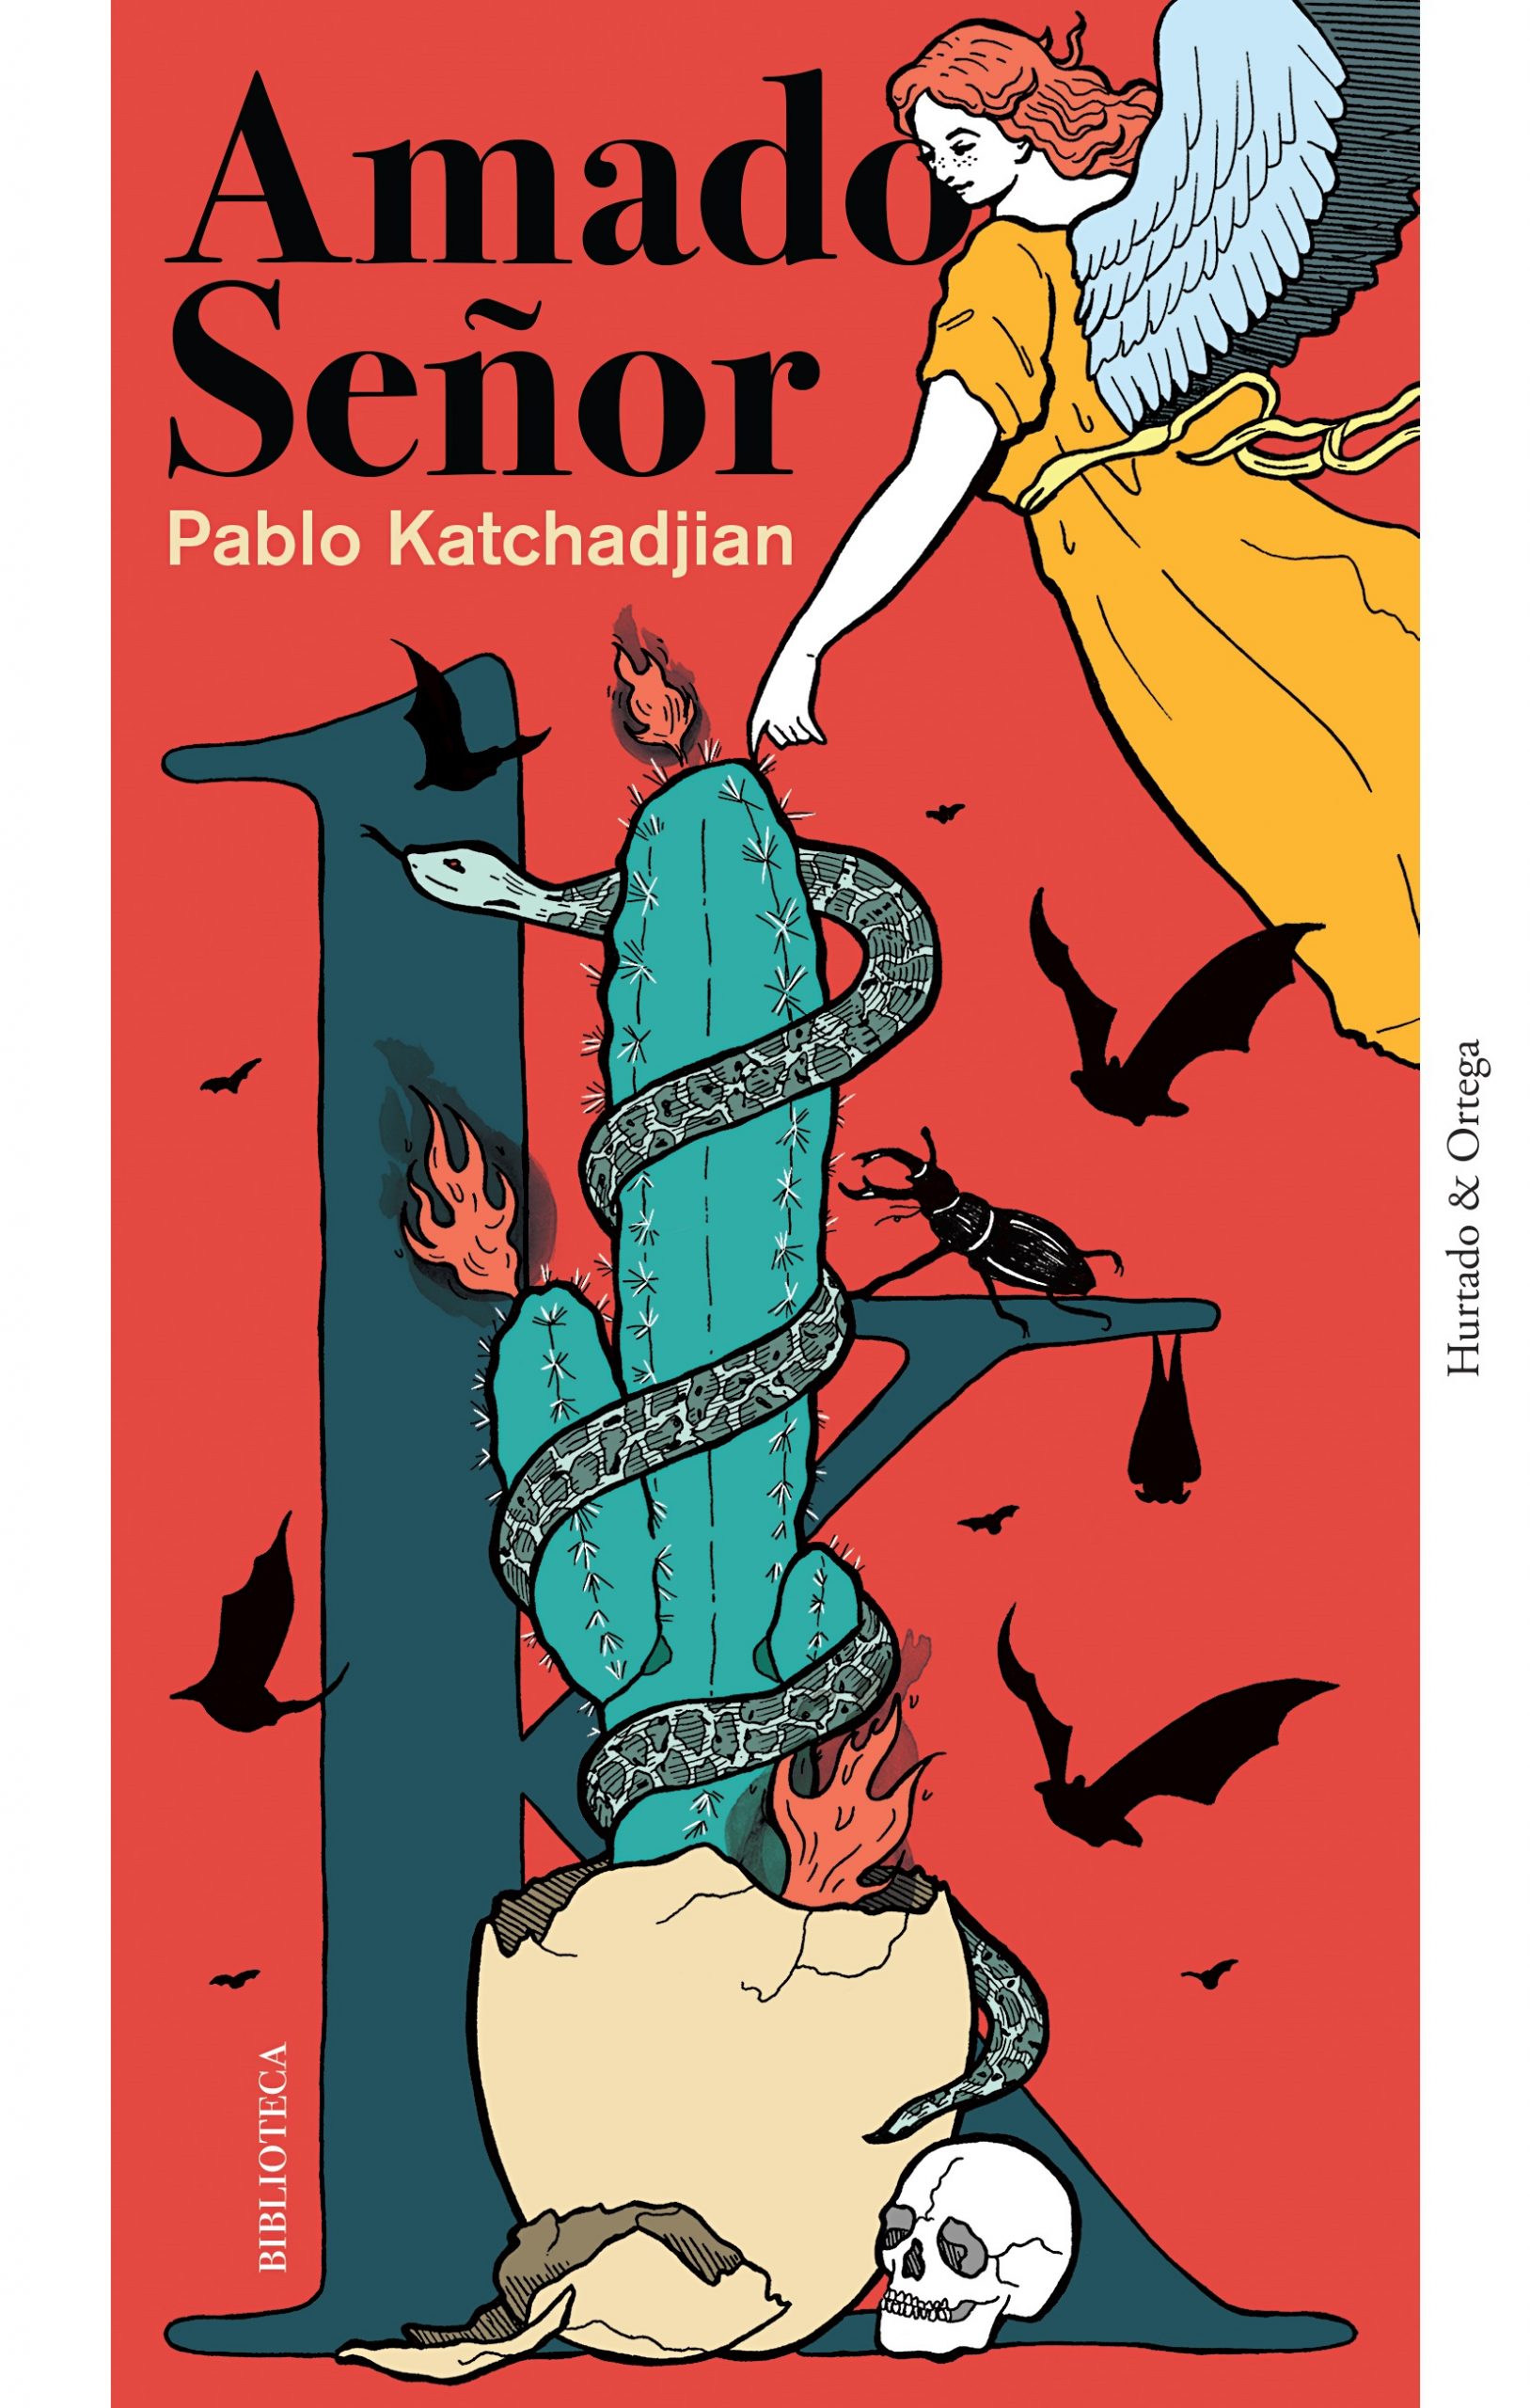 Pablo Katchadjian: “Trato de buscar ese desorden culposo activamente, quizá porque no soy antiperonista”